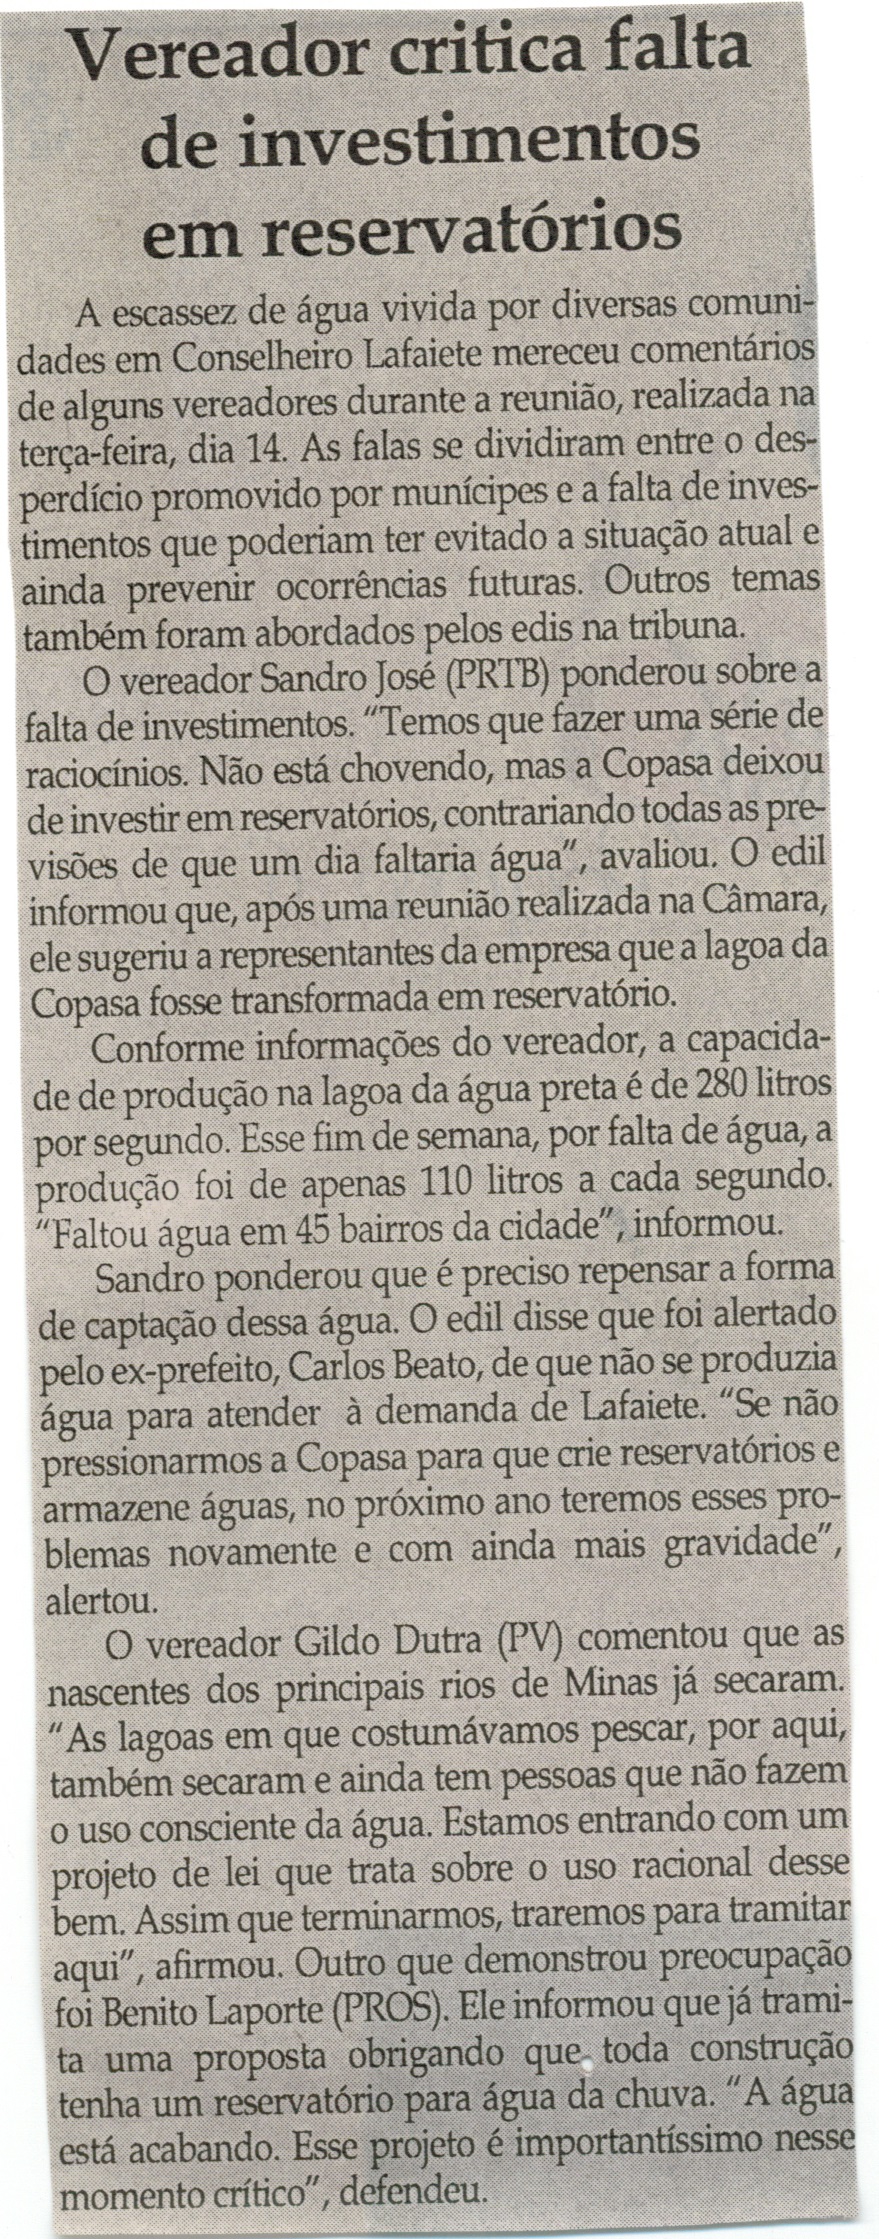 Vereador critica falta de investimentos em reservatórios. Jornal Correio da Cidade, Conselheiro Lafaiete, 18 out. 2014, p. 6.